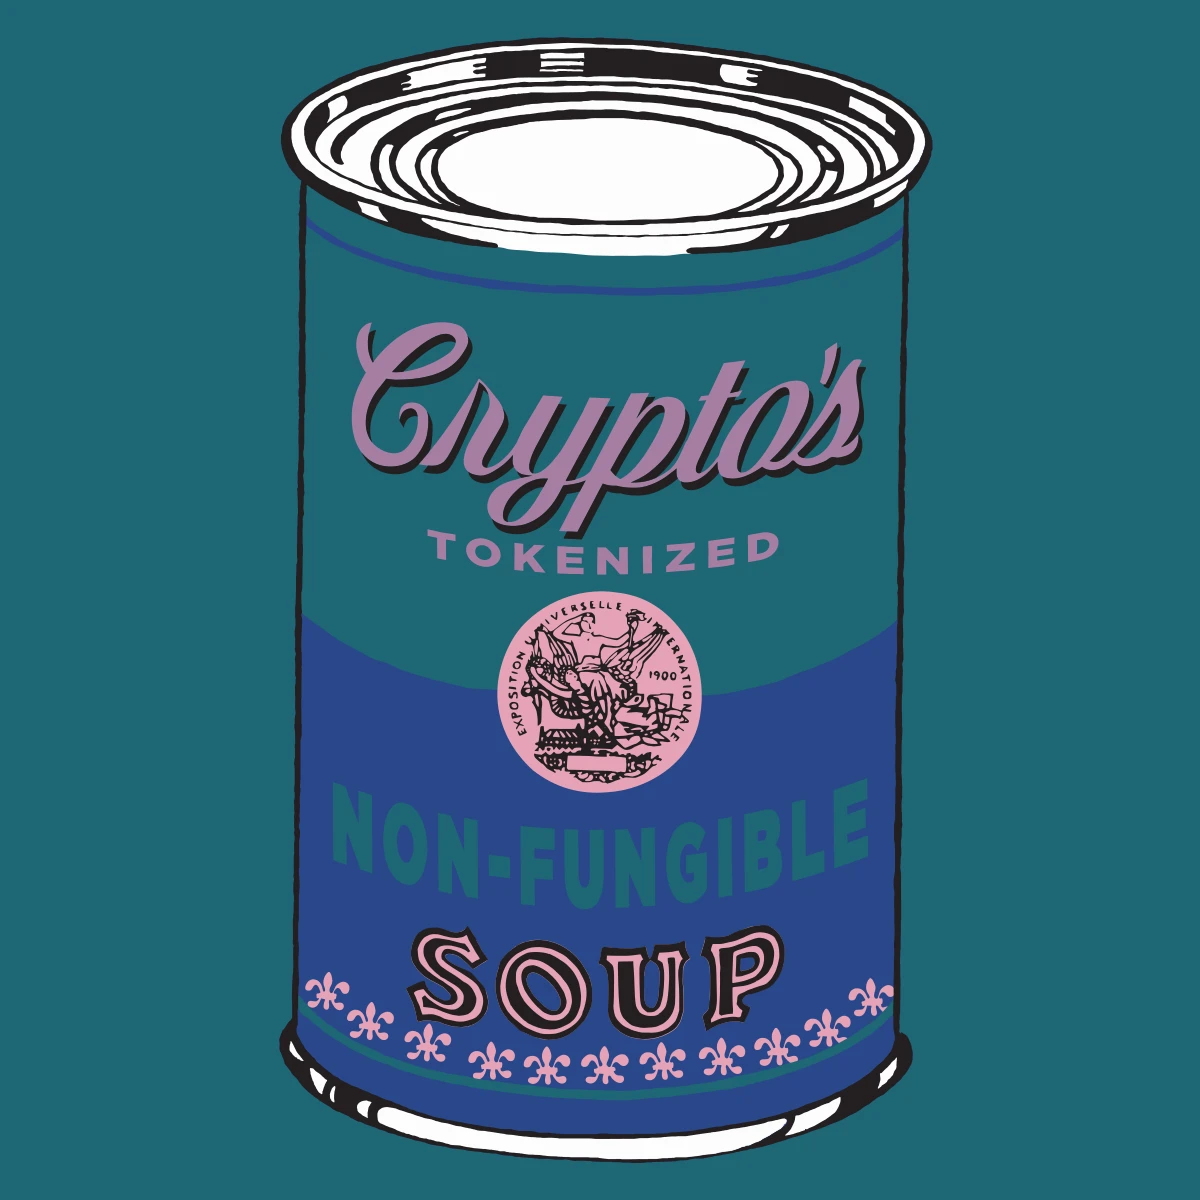 Non-Fungible Soup #1922